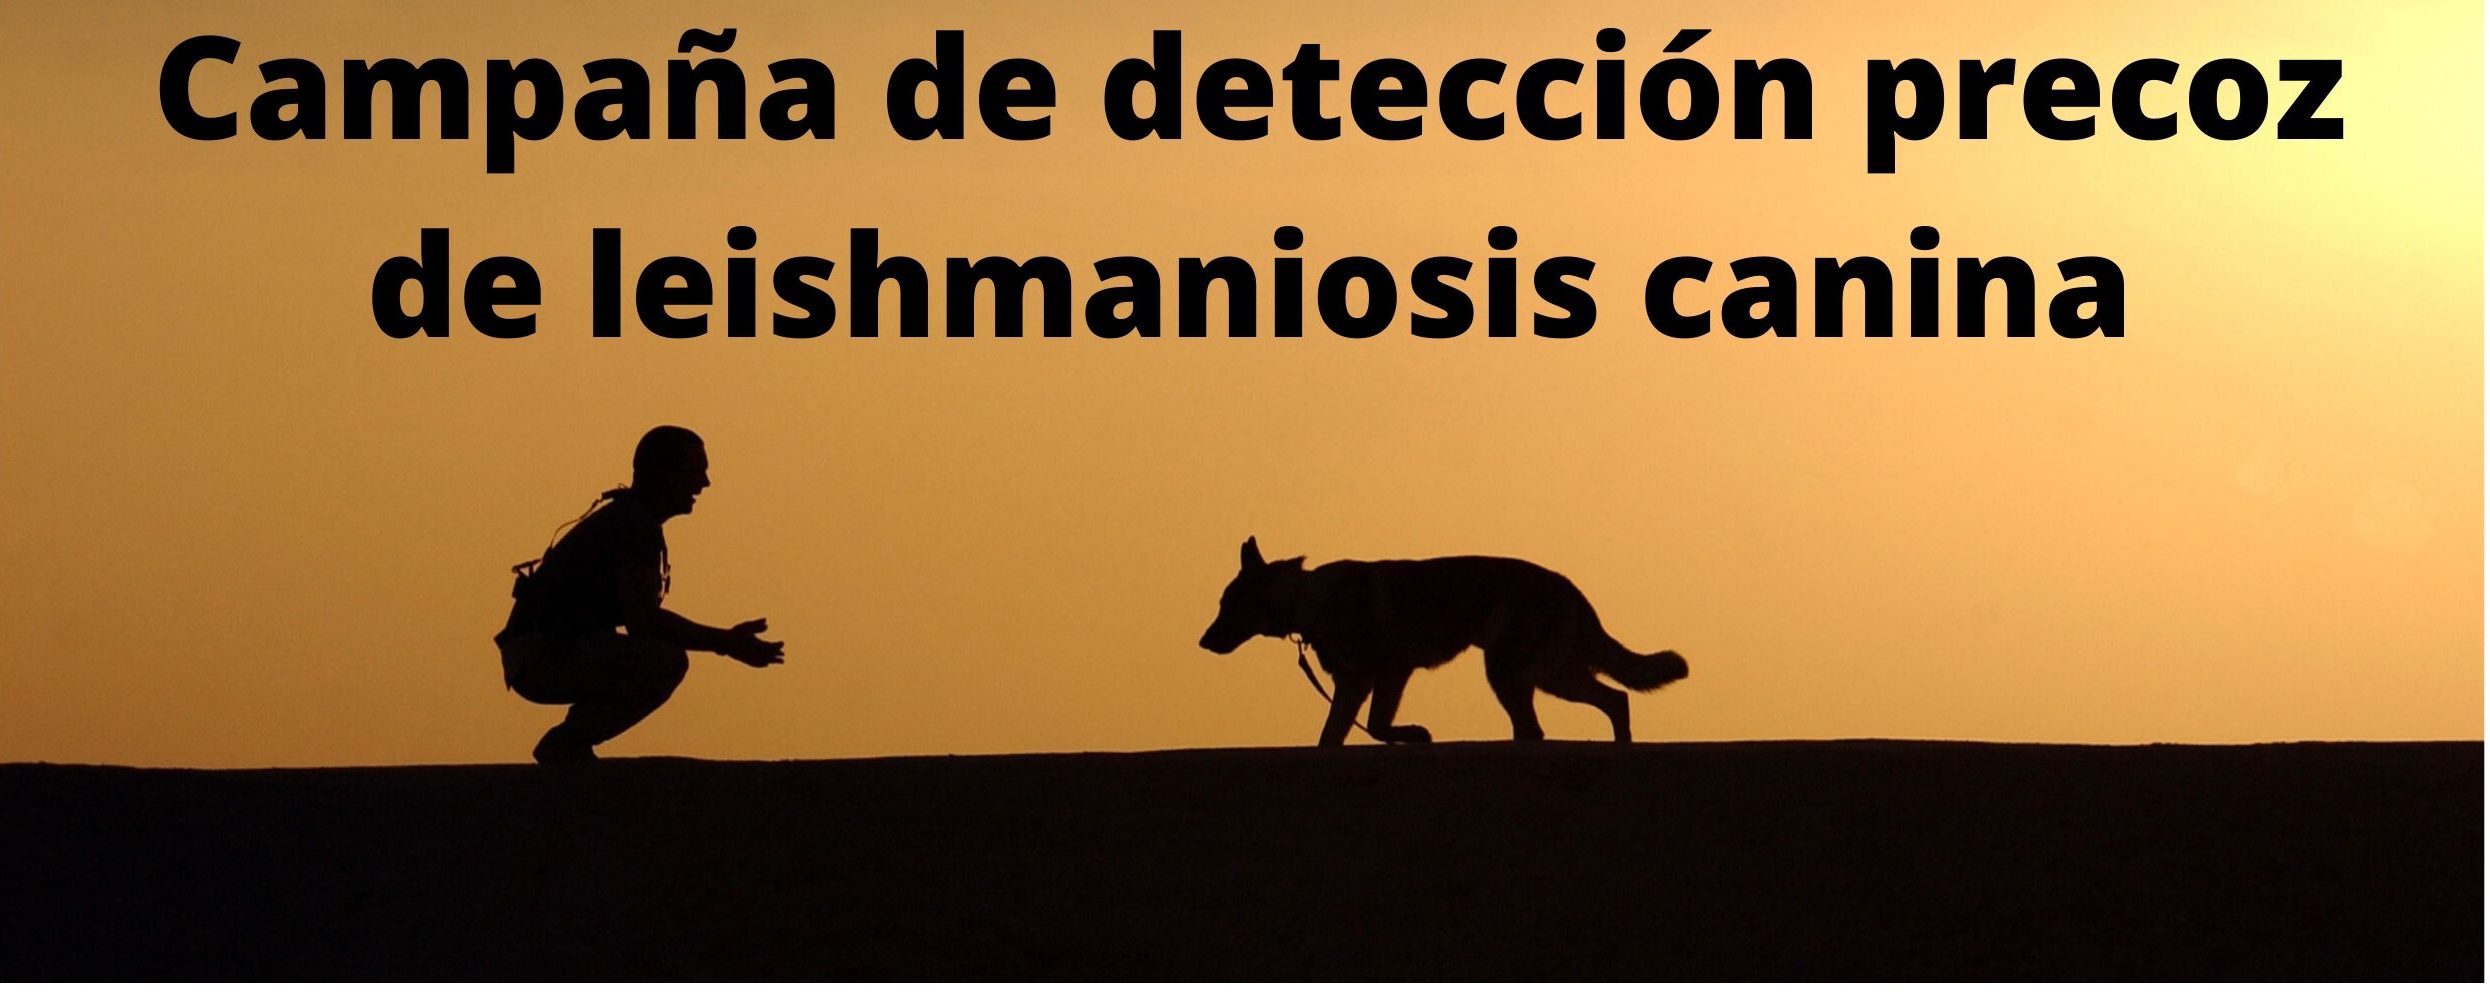 Campaña de detección precoz de leishmaniosis canina